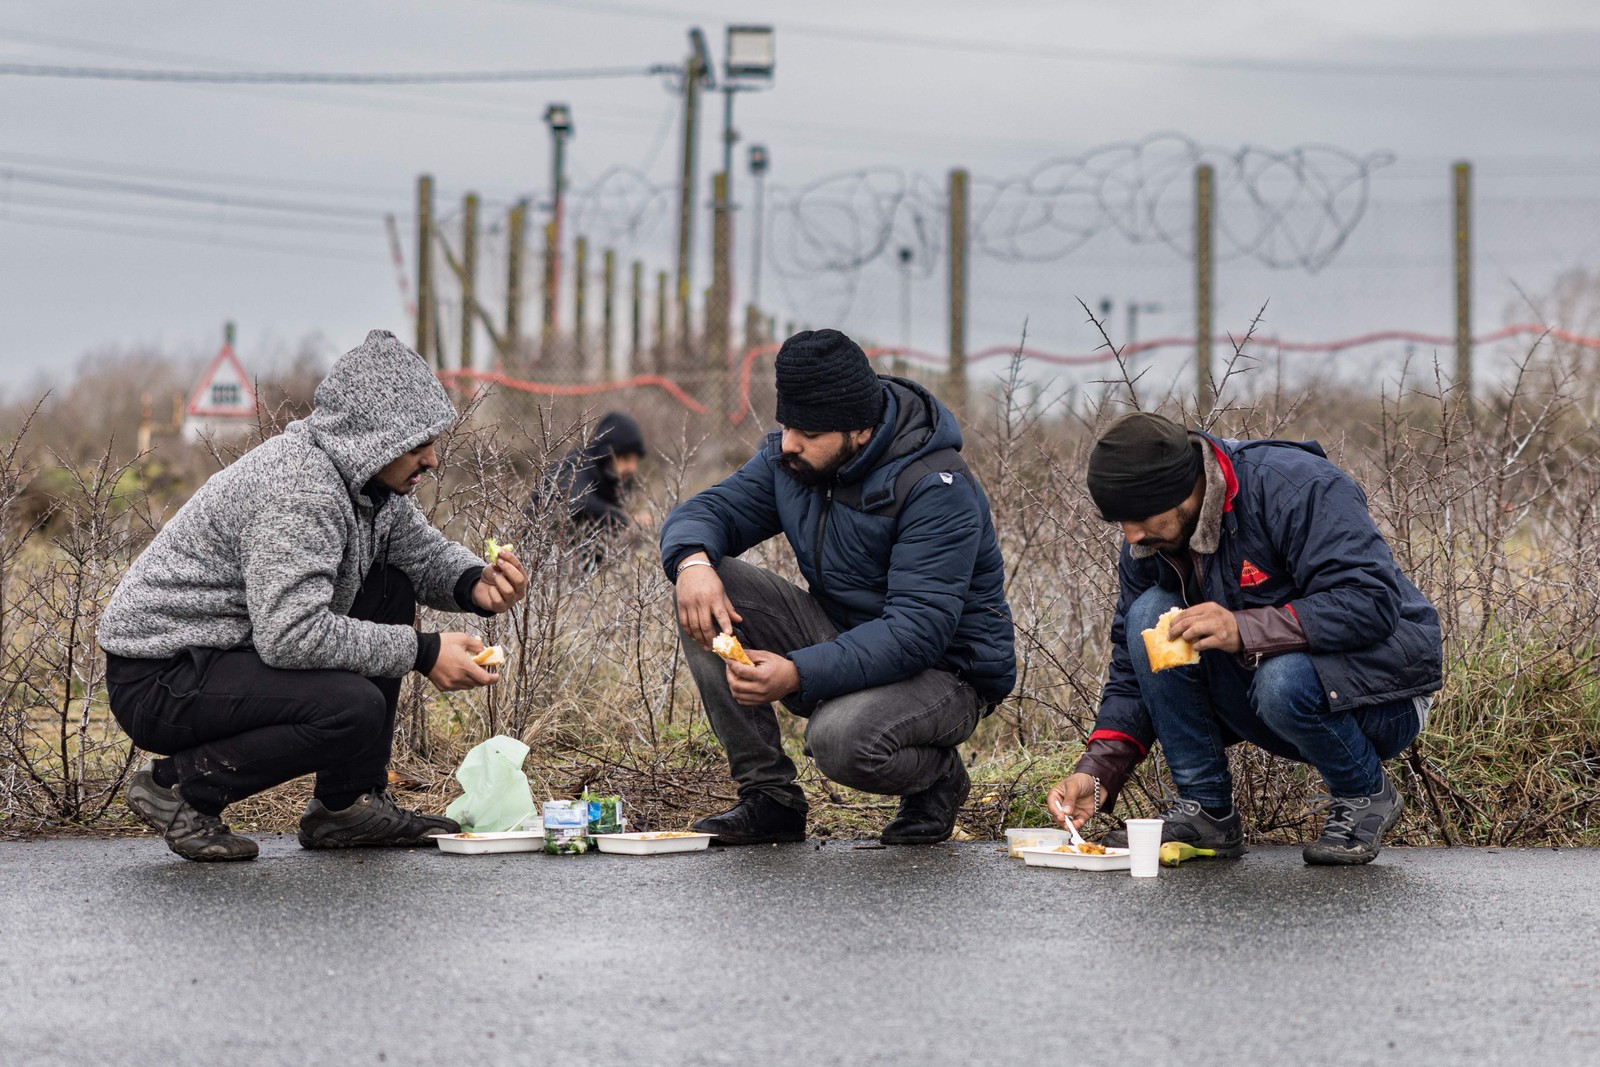 Migrantes comem refeições distribuídas por associações locais em um acampamento improvisado em Mardyck, norte da França — Foto: SAMEER AL-DOUMY/AFP